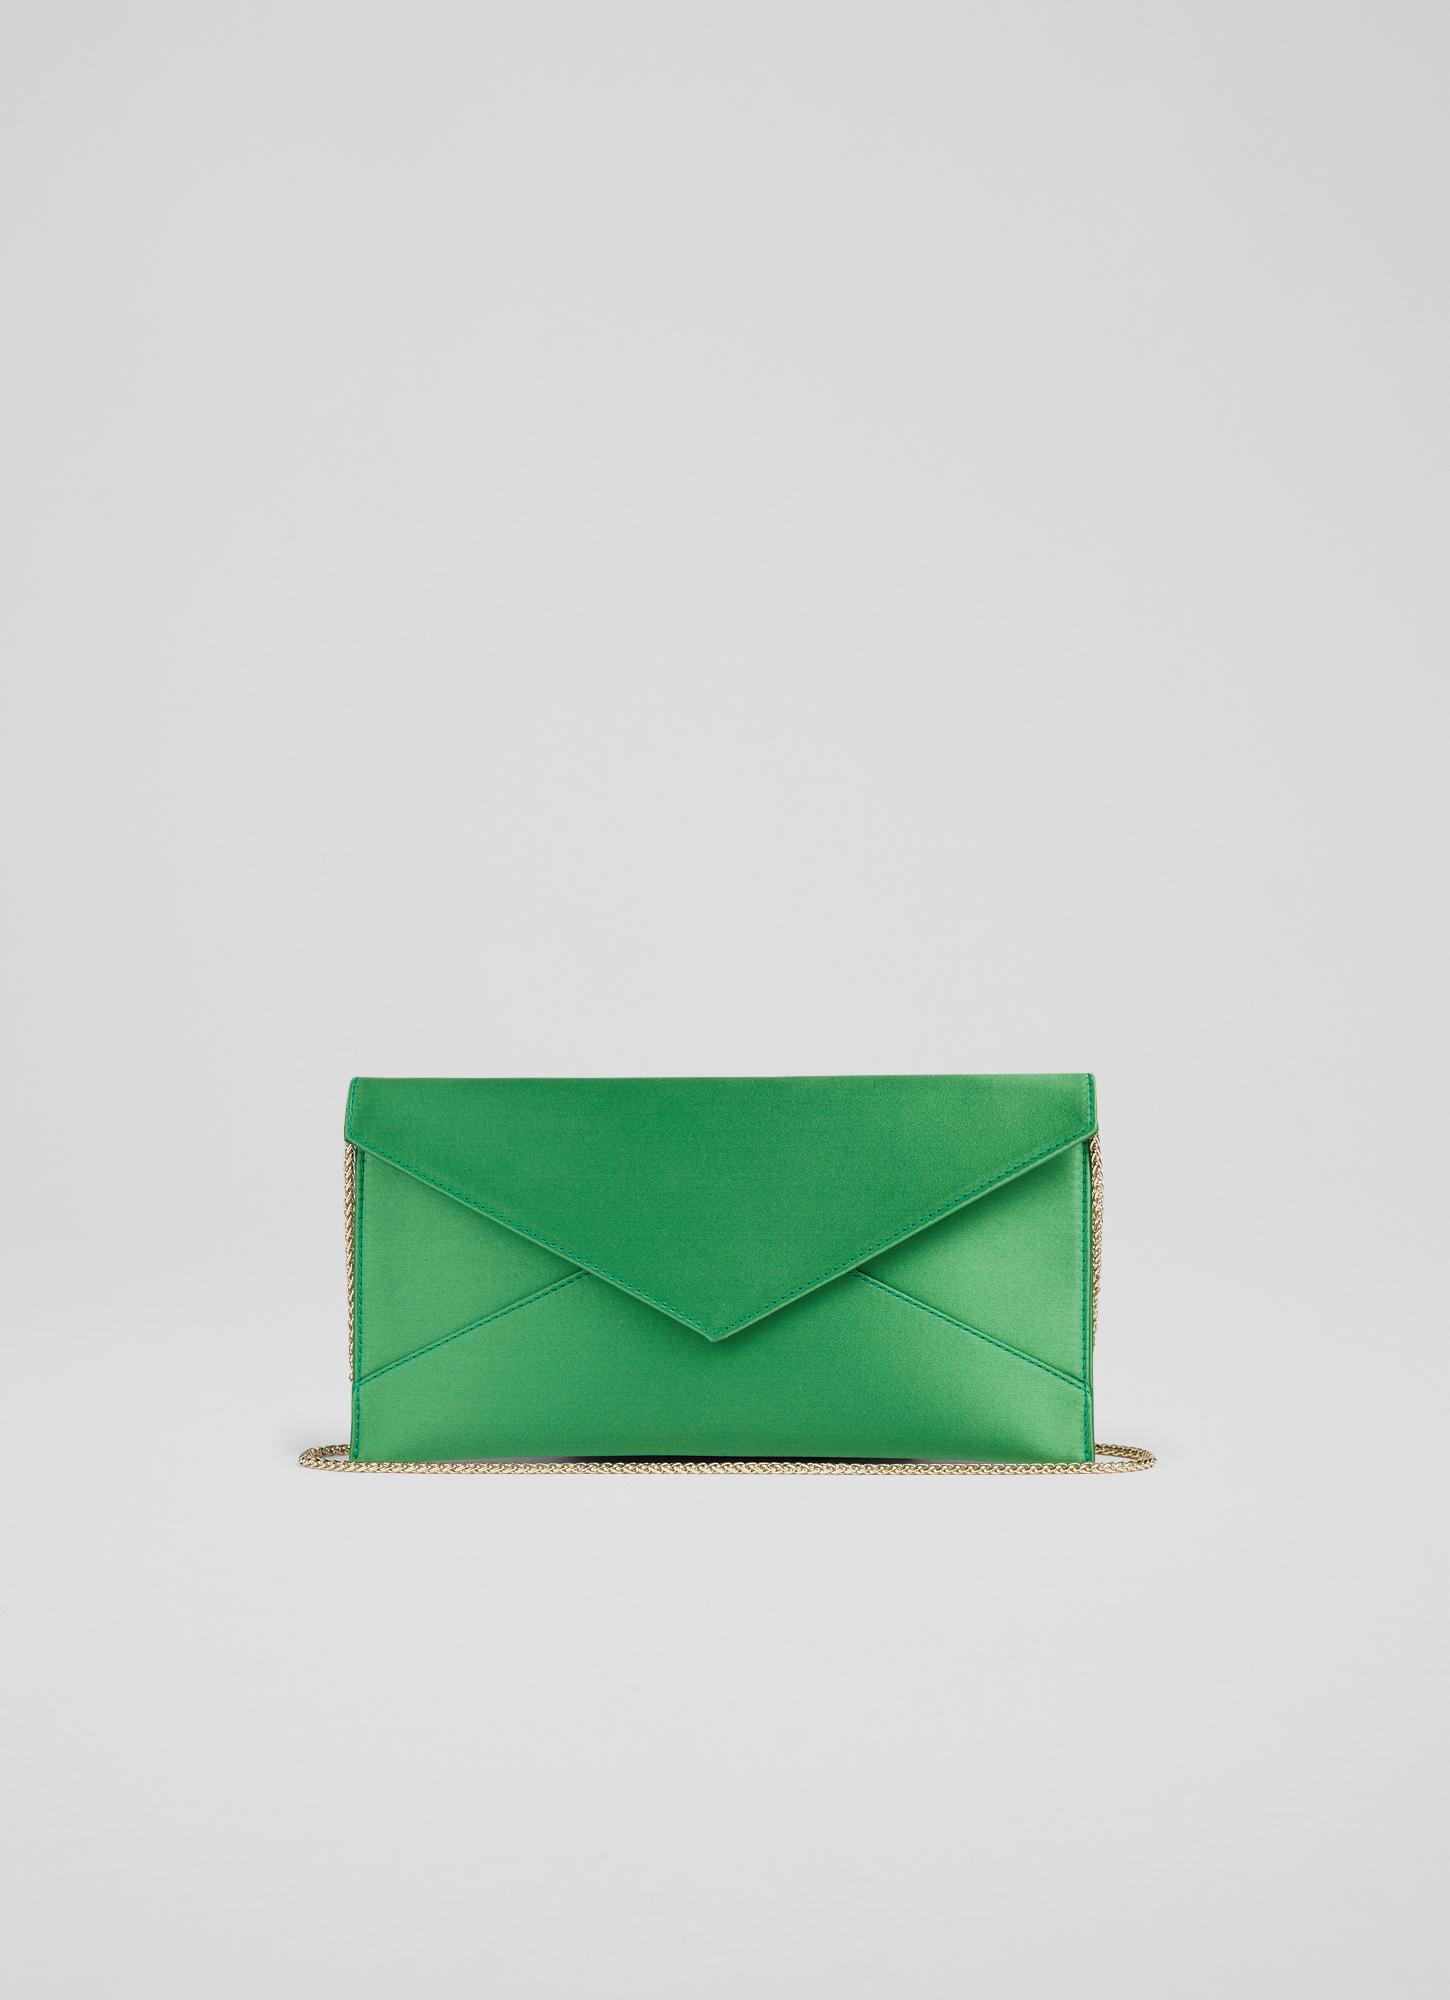 Kendall Green Satin Clutch Bag, Green